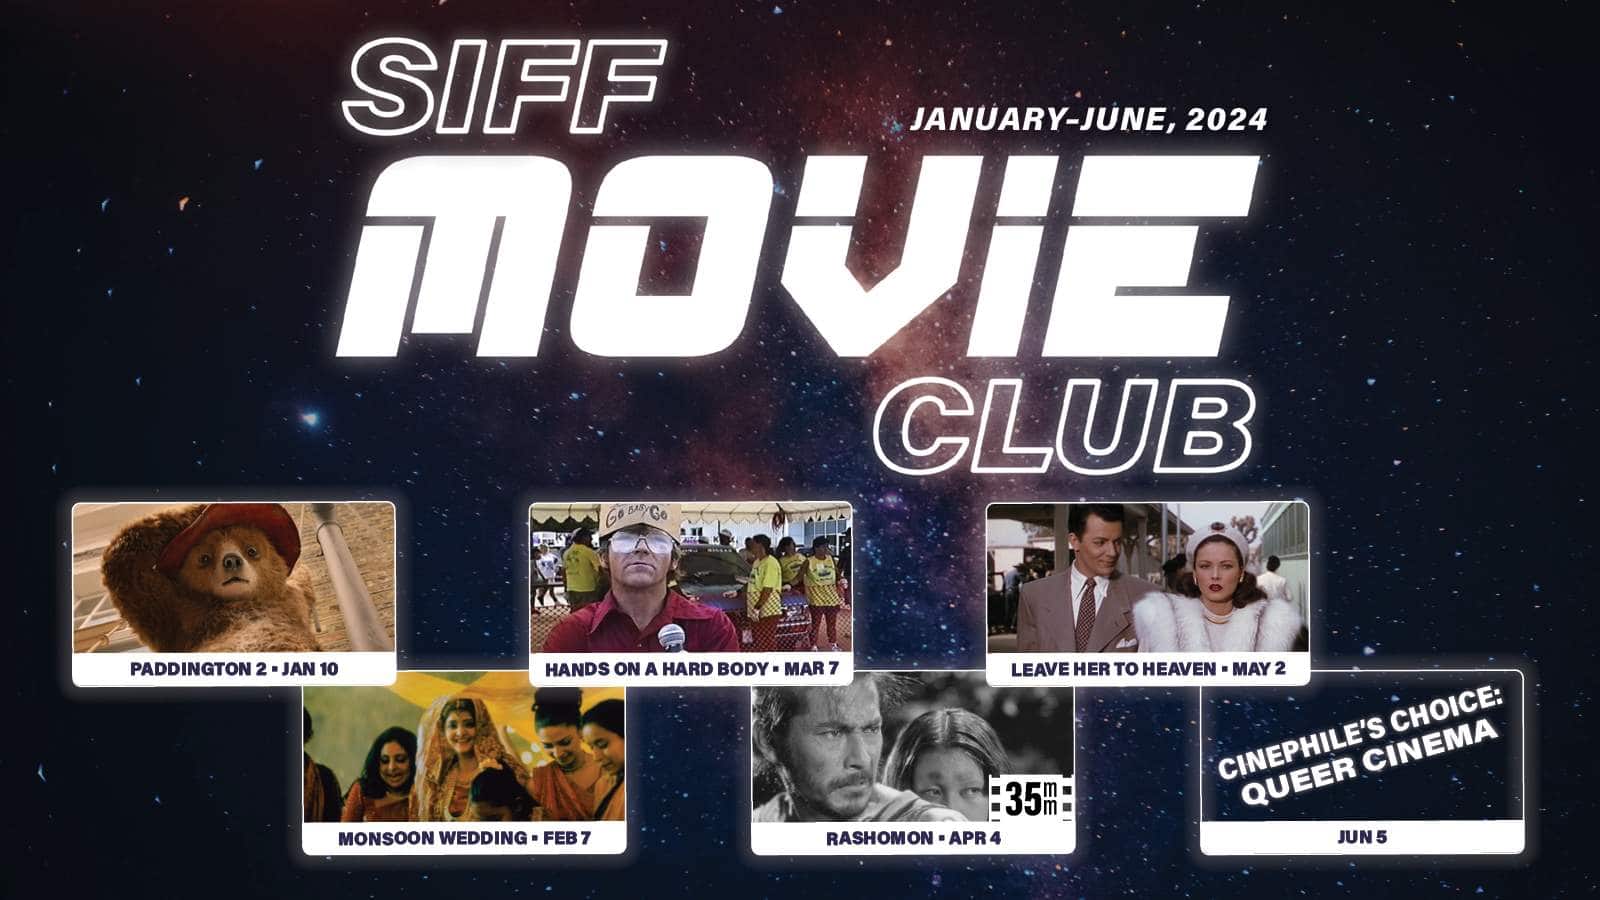 SIFF Movie Club